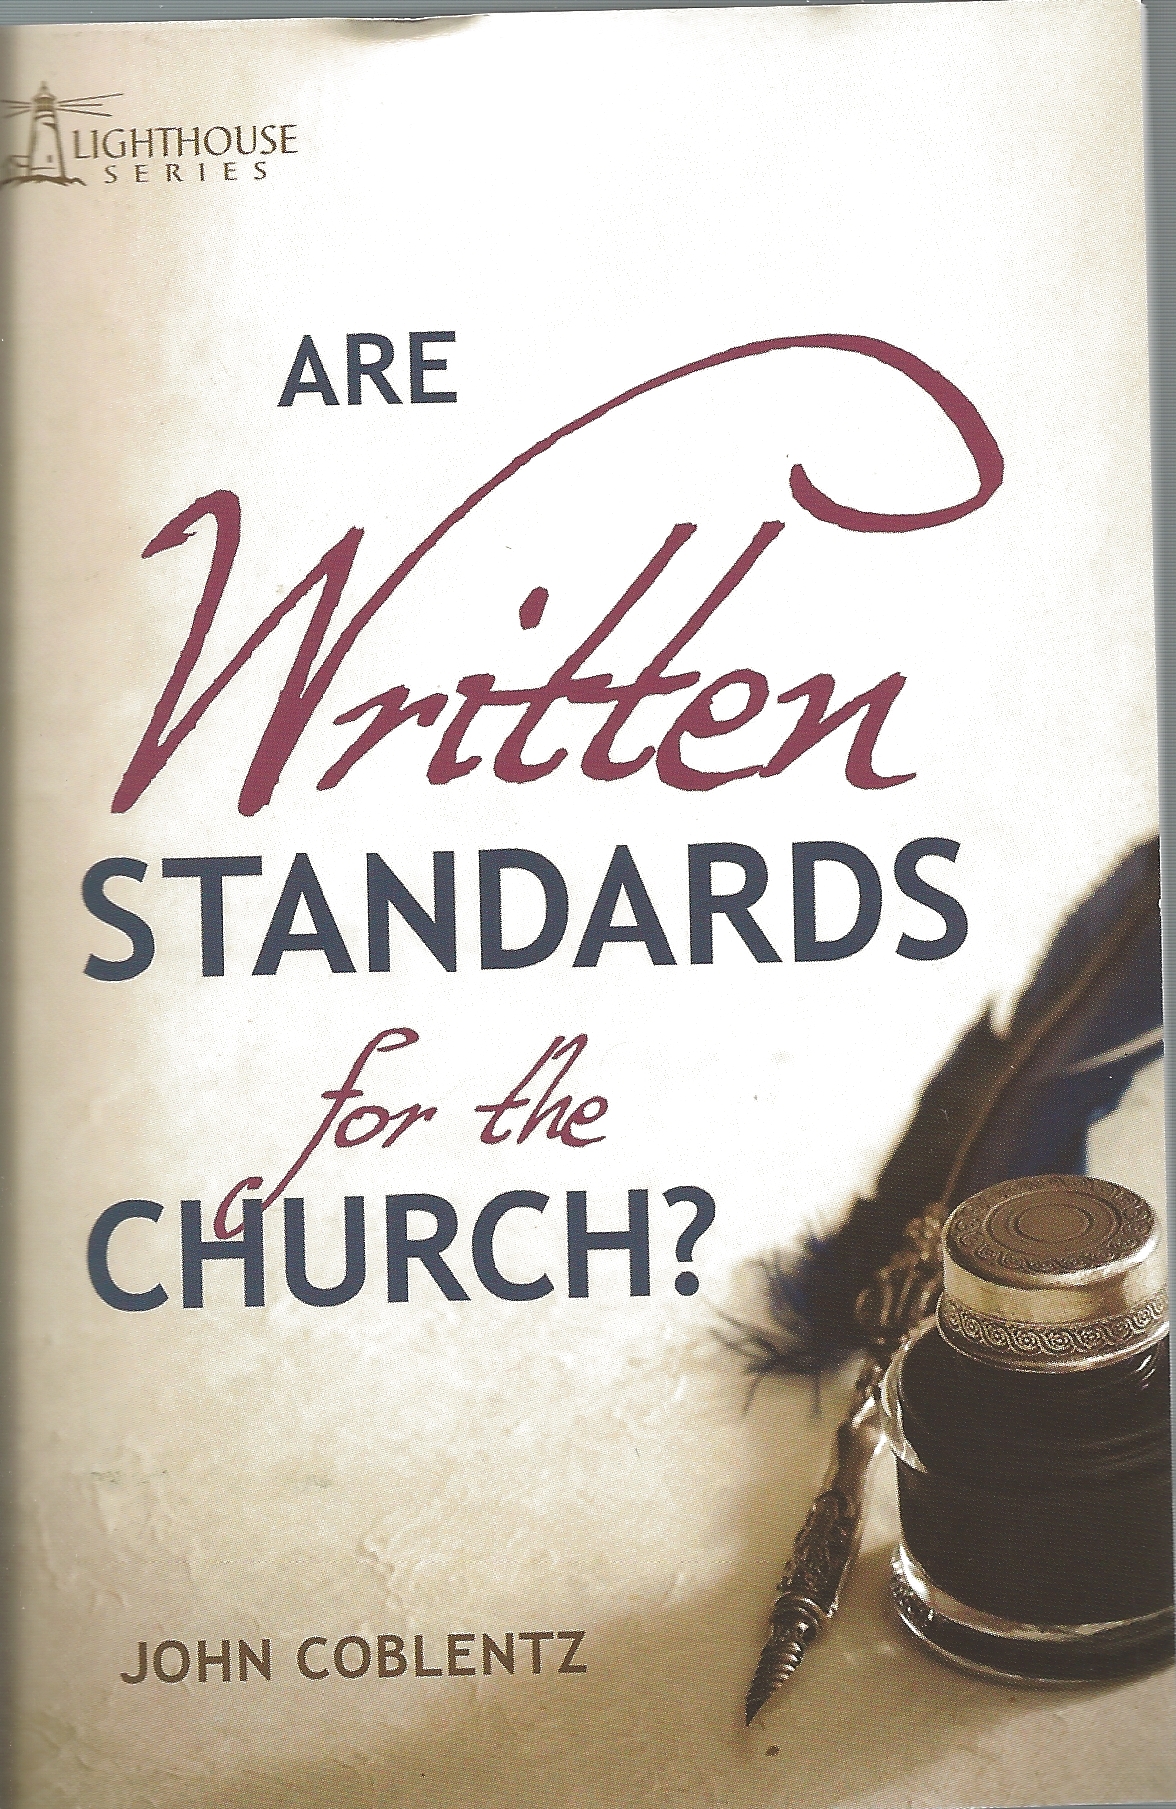 ARE WRITTEN STANDARDS FOR THE CHURCH? John Coblentz